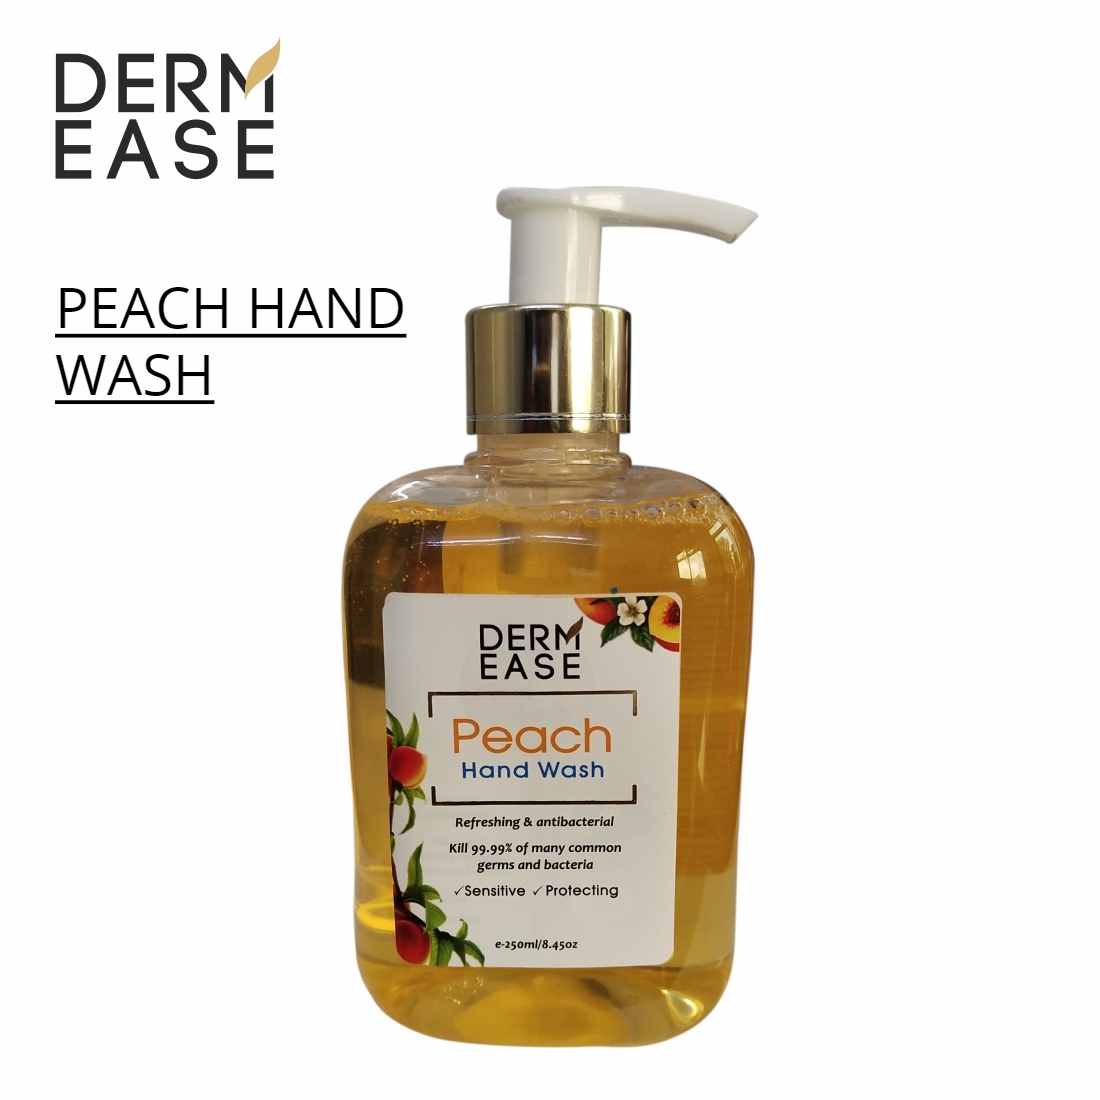 DERM EASE Peach Hand Wash